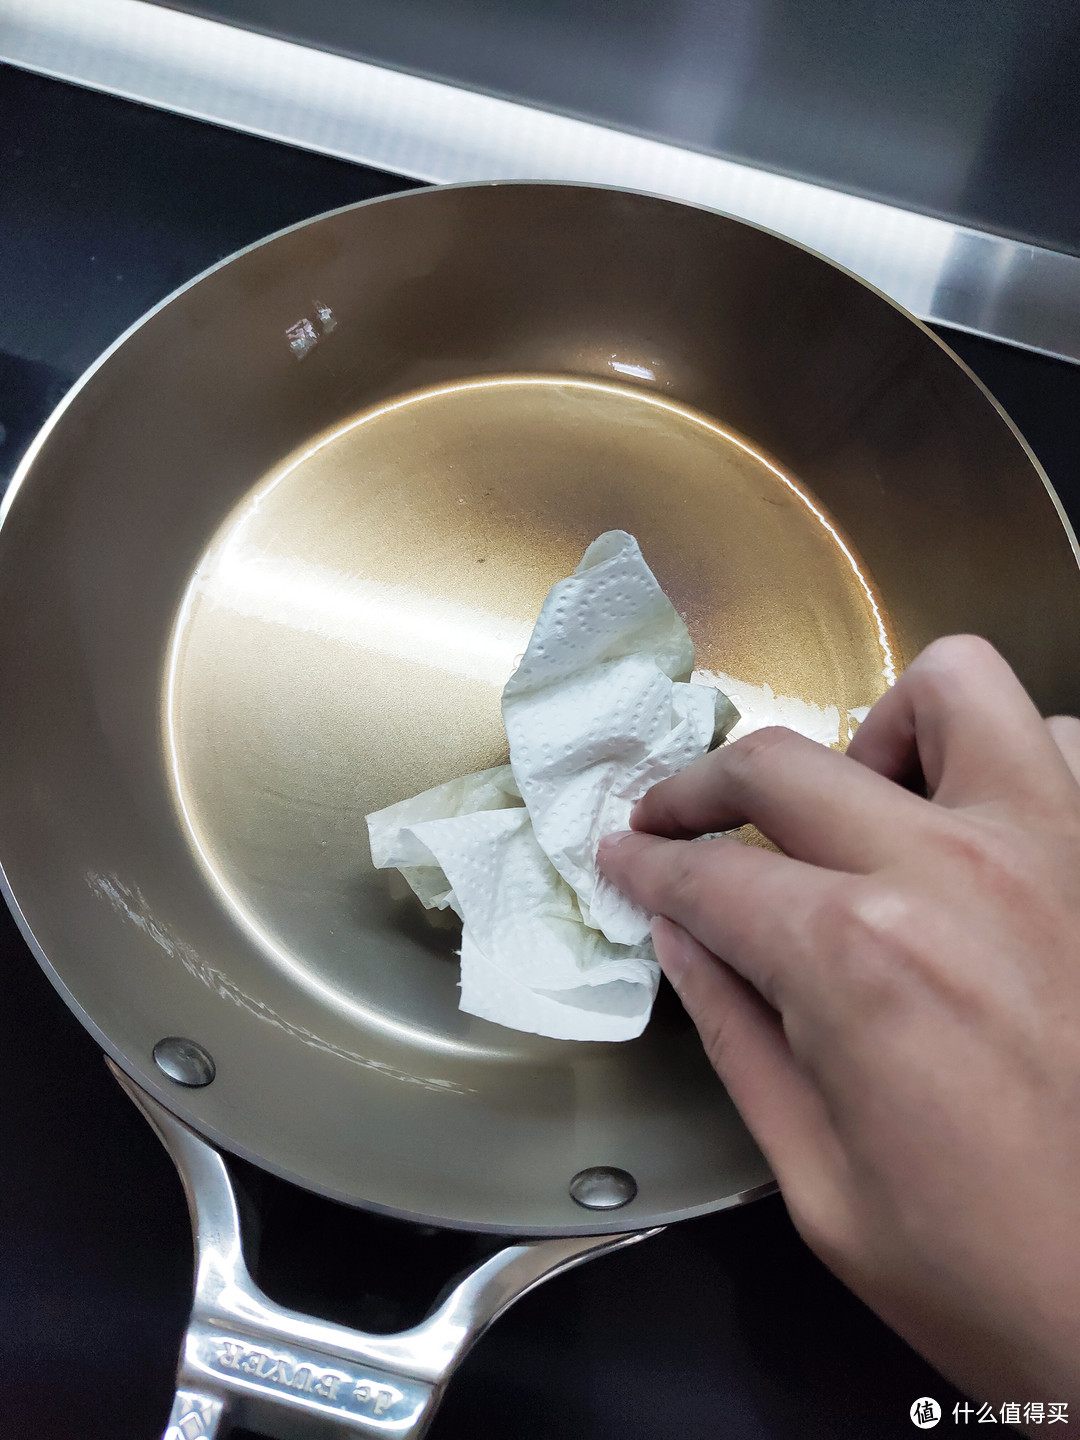 用厨房纸巾涂满锅的四周